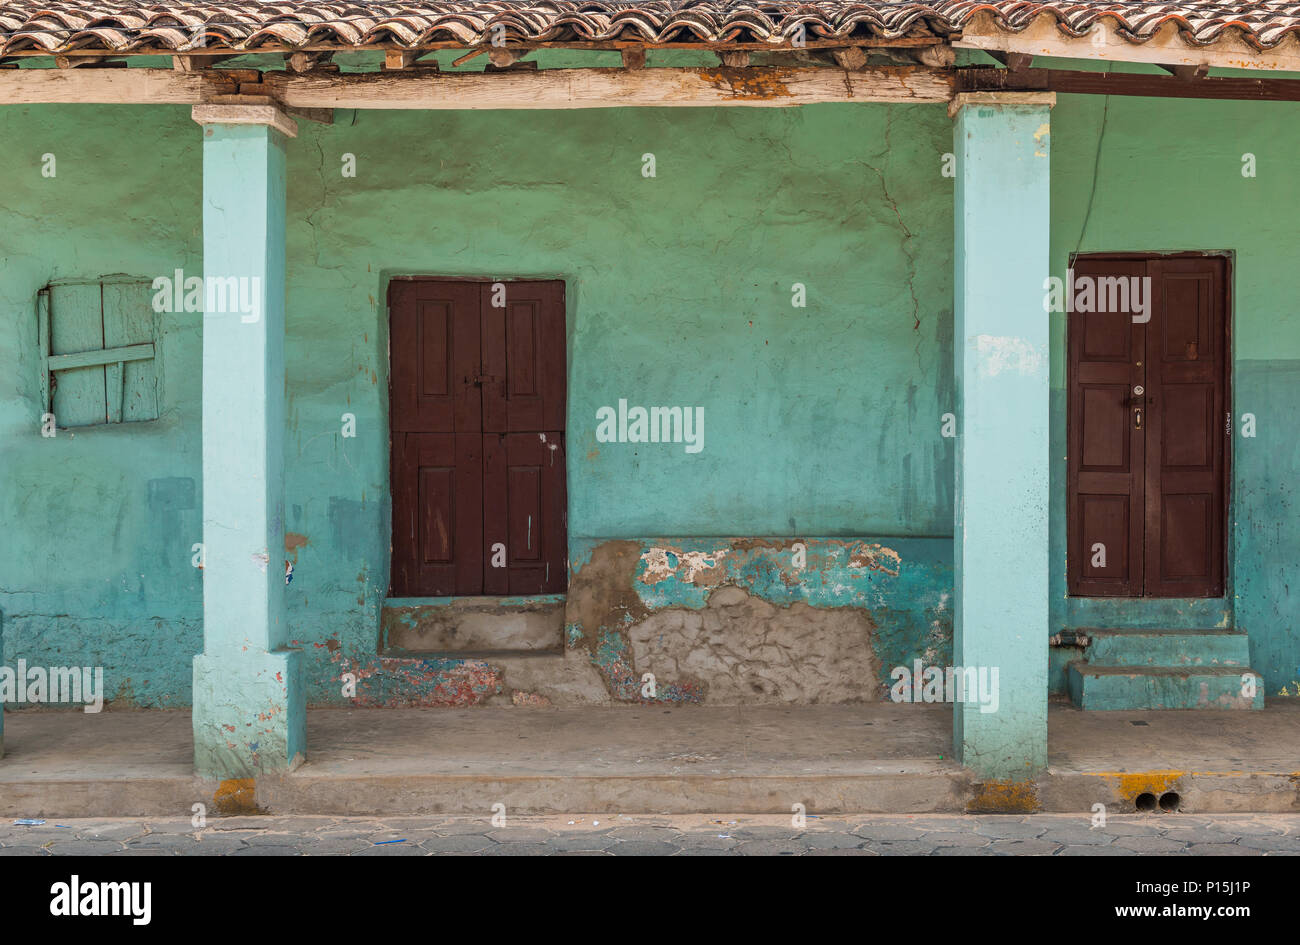 Fachada de un turquesa y verde vintage casa en Santa Cruz de la Sierra en un estilo de arquitectura colonial, Bolivia, América del Sur. Foto de stock